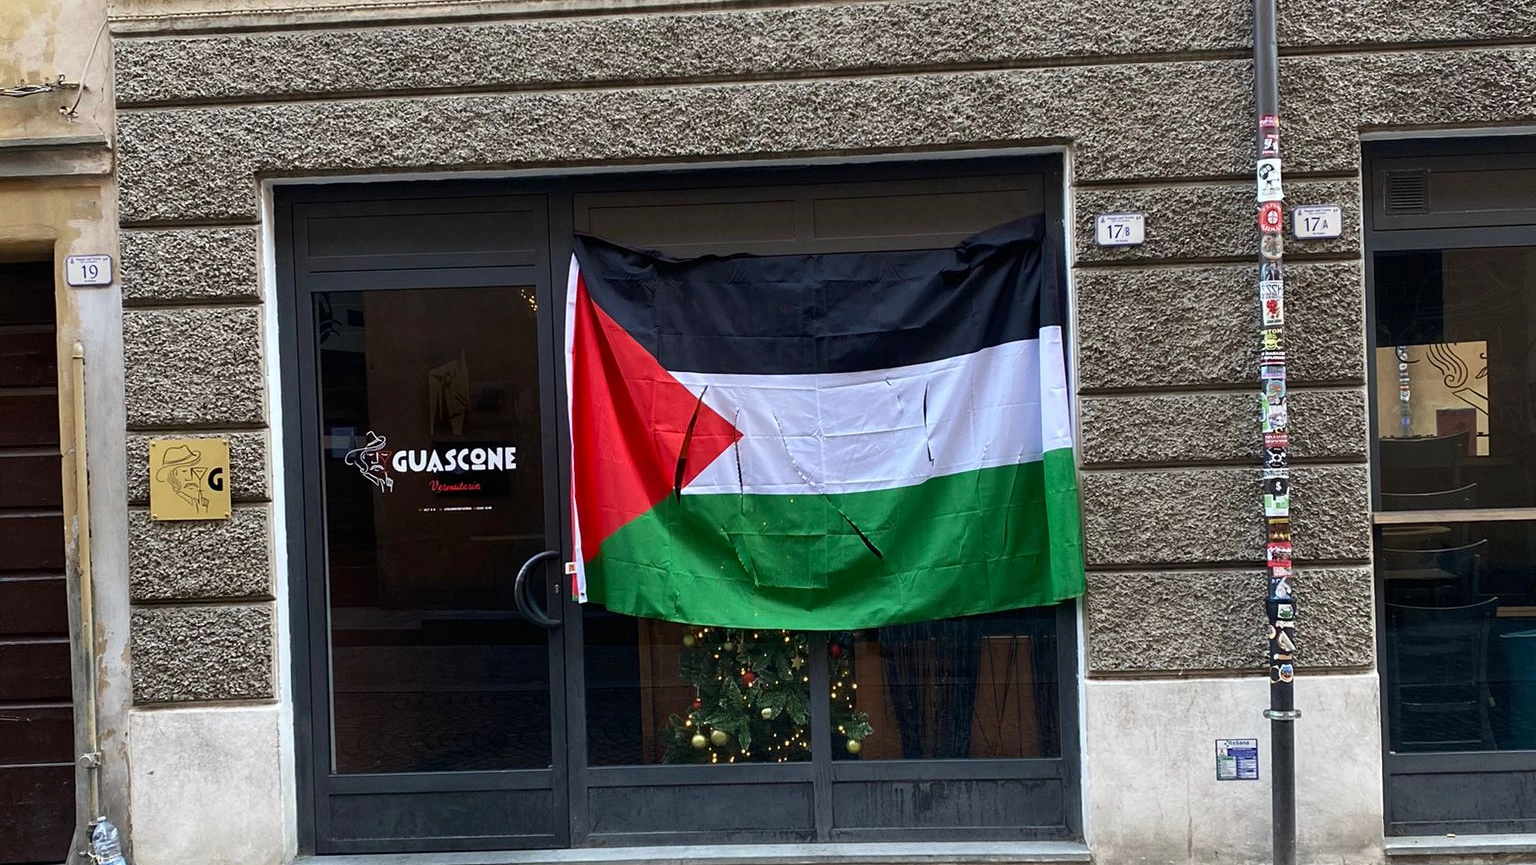 La bandiera palestinese strappata: era esposta sulle vetrate del locale Guascone